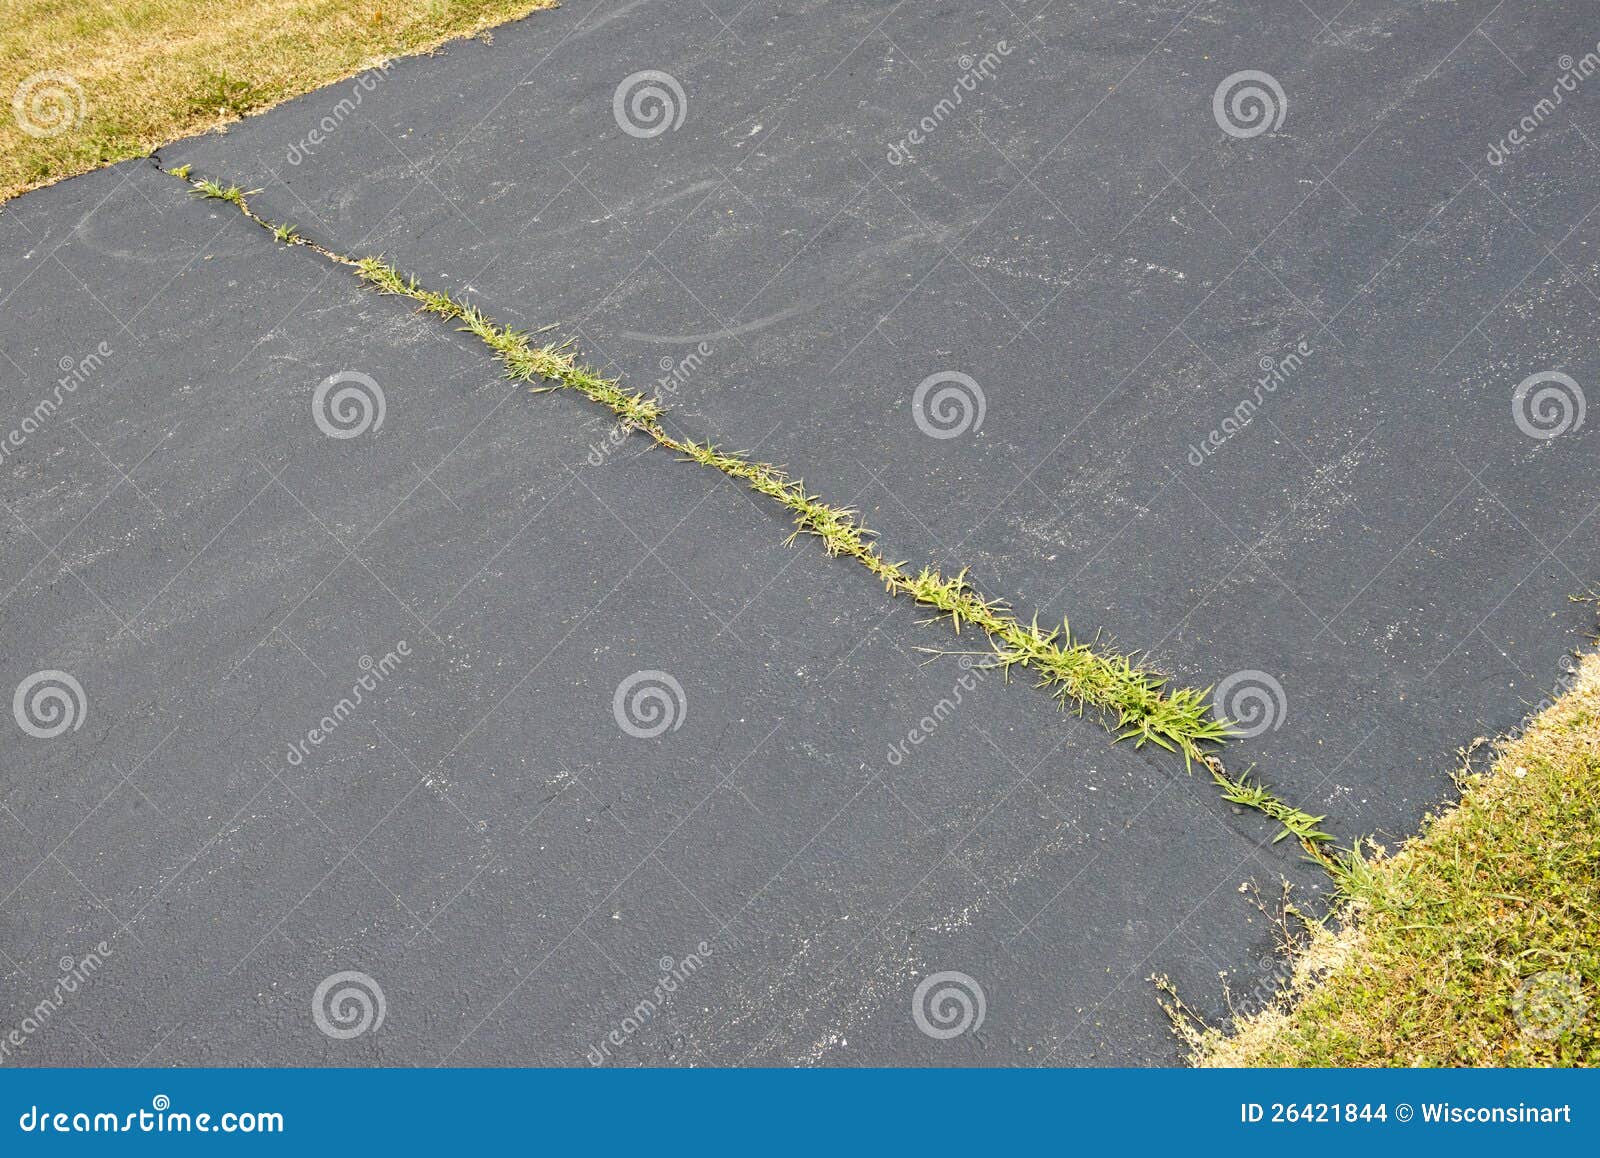 weeds growing in asphalt driveway crack